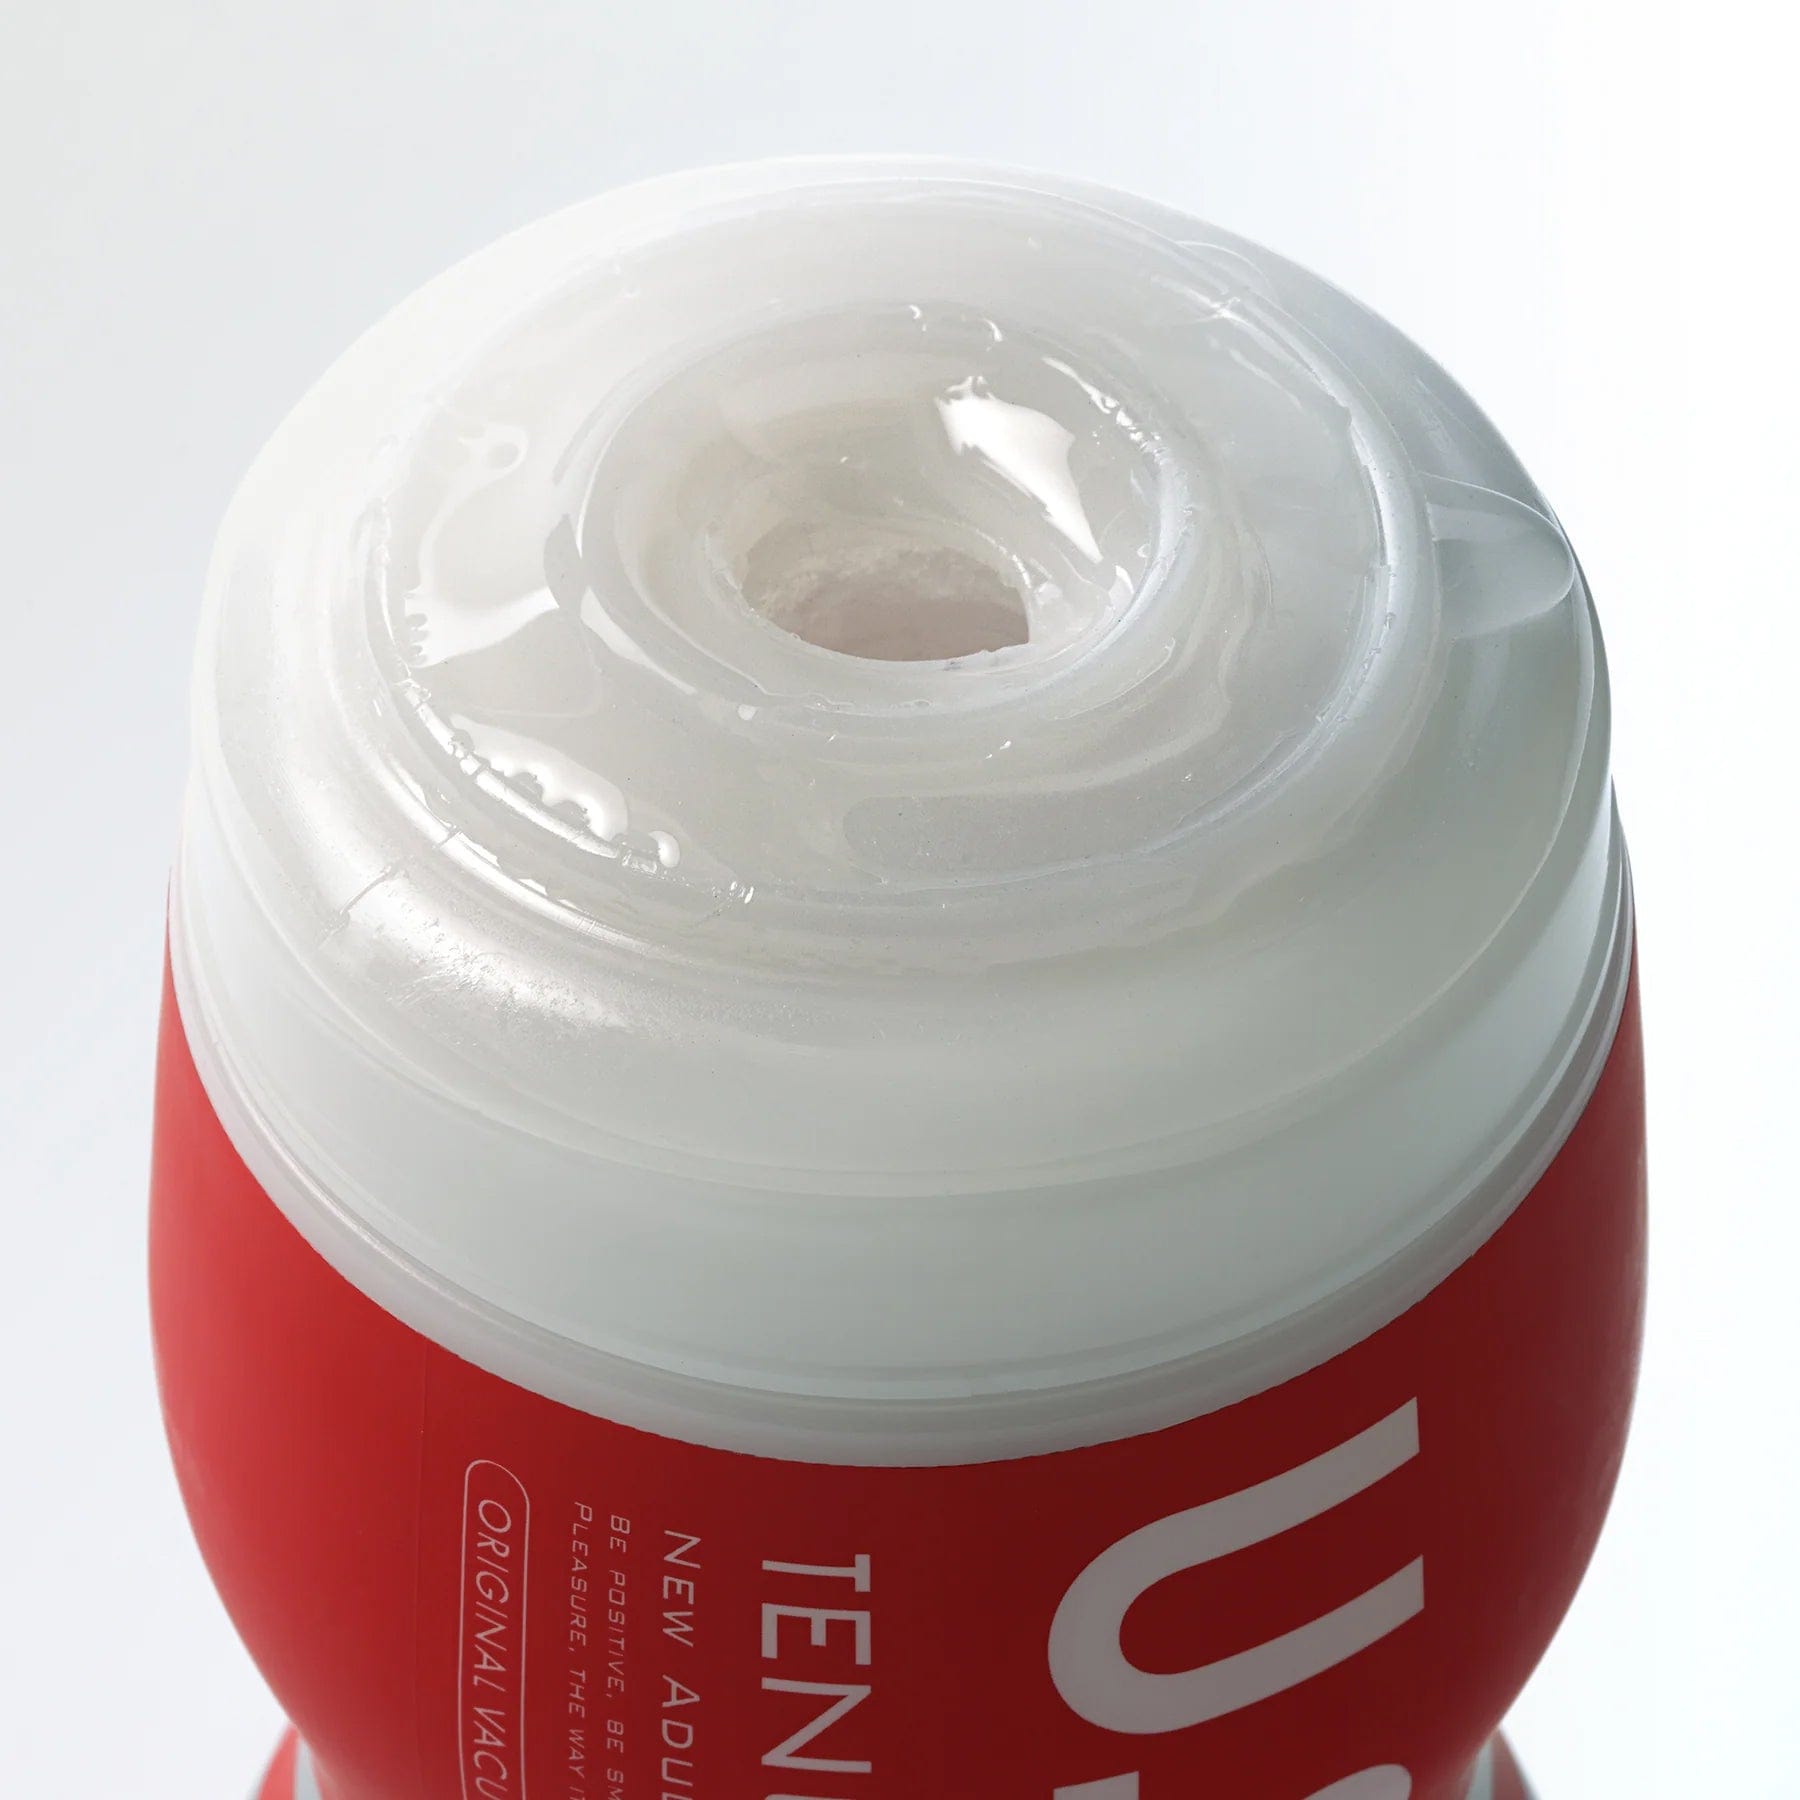 Tenga - U.S. Tenga Original Vacuum Cup Masturbator Soft (White) TE1212 CherryAffairs